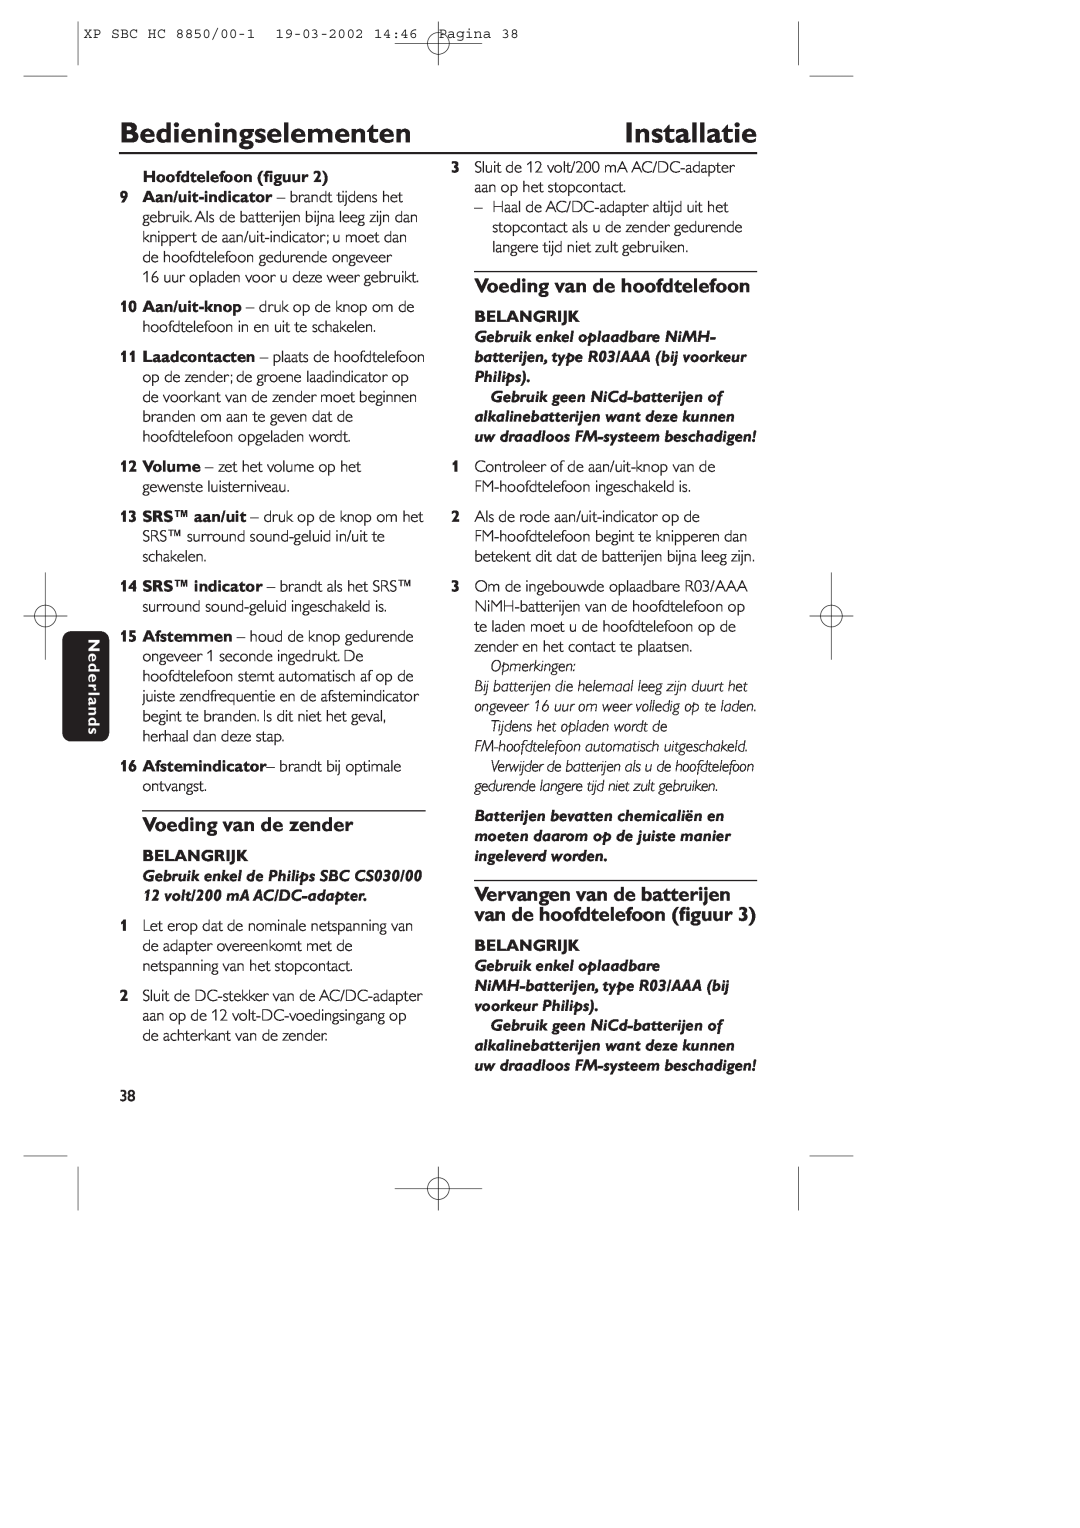 Philips HC8850 BedieningselementenInstallatie, Voeding van de zender, Voeding van de hoofdtelefoon, Nederlands, Belangrijk 